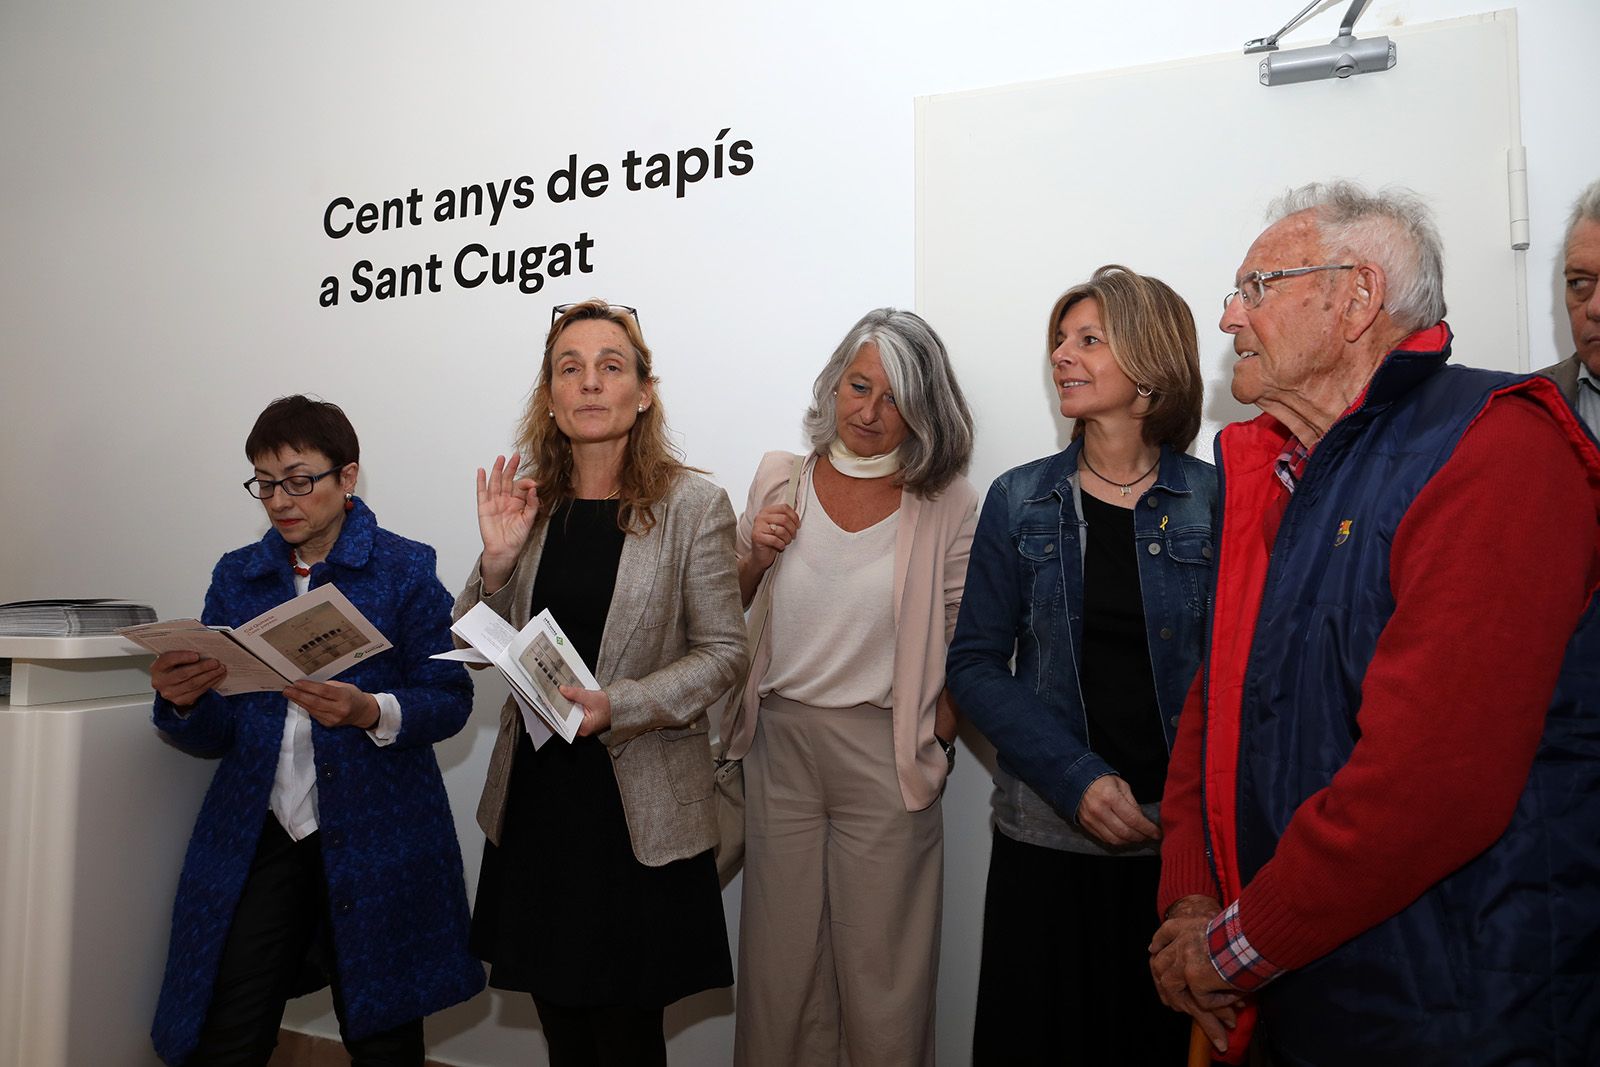 Inauguració del Centre d'art Grau Garriga a Can Quitèria. Foto: Lali Álvarez